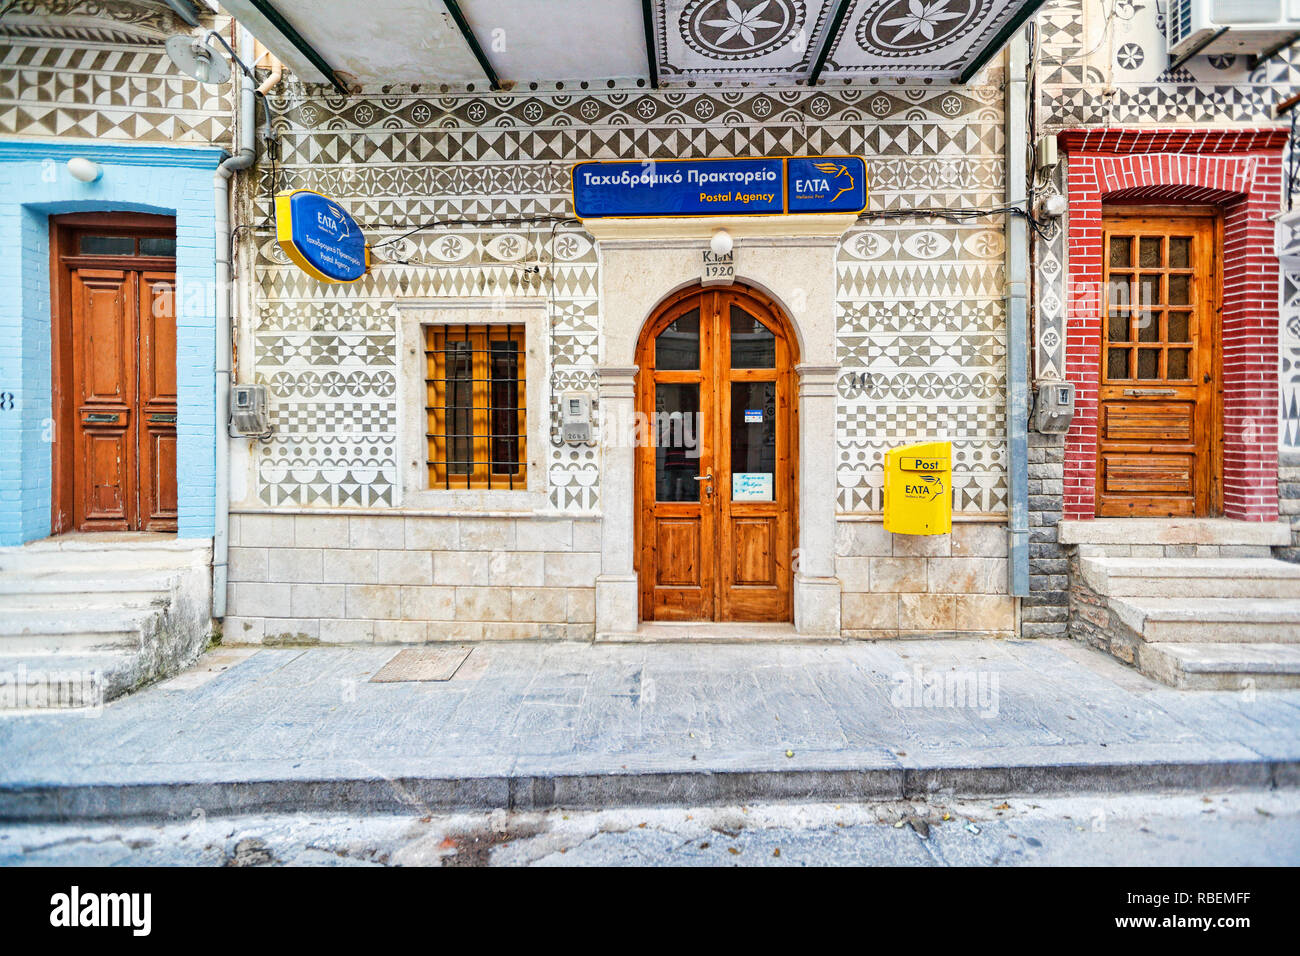 Le bureau de poste décoré de la célèbre rayure géométrique des modèles dans le village médiéval de mastic de Pyrgi sur l'île de Chios, Grèce Banque D'Images